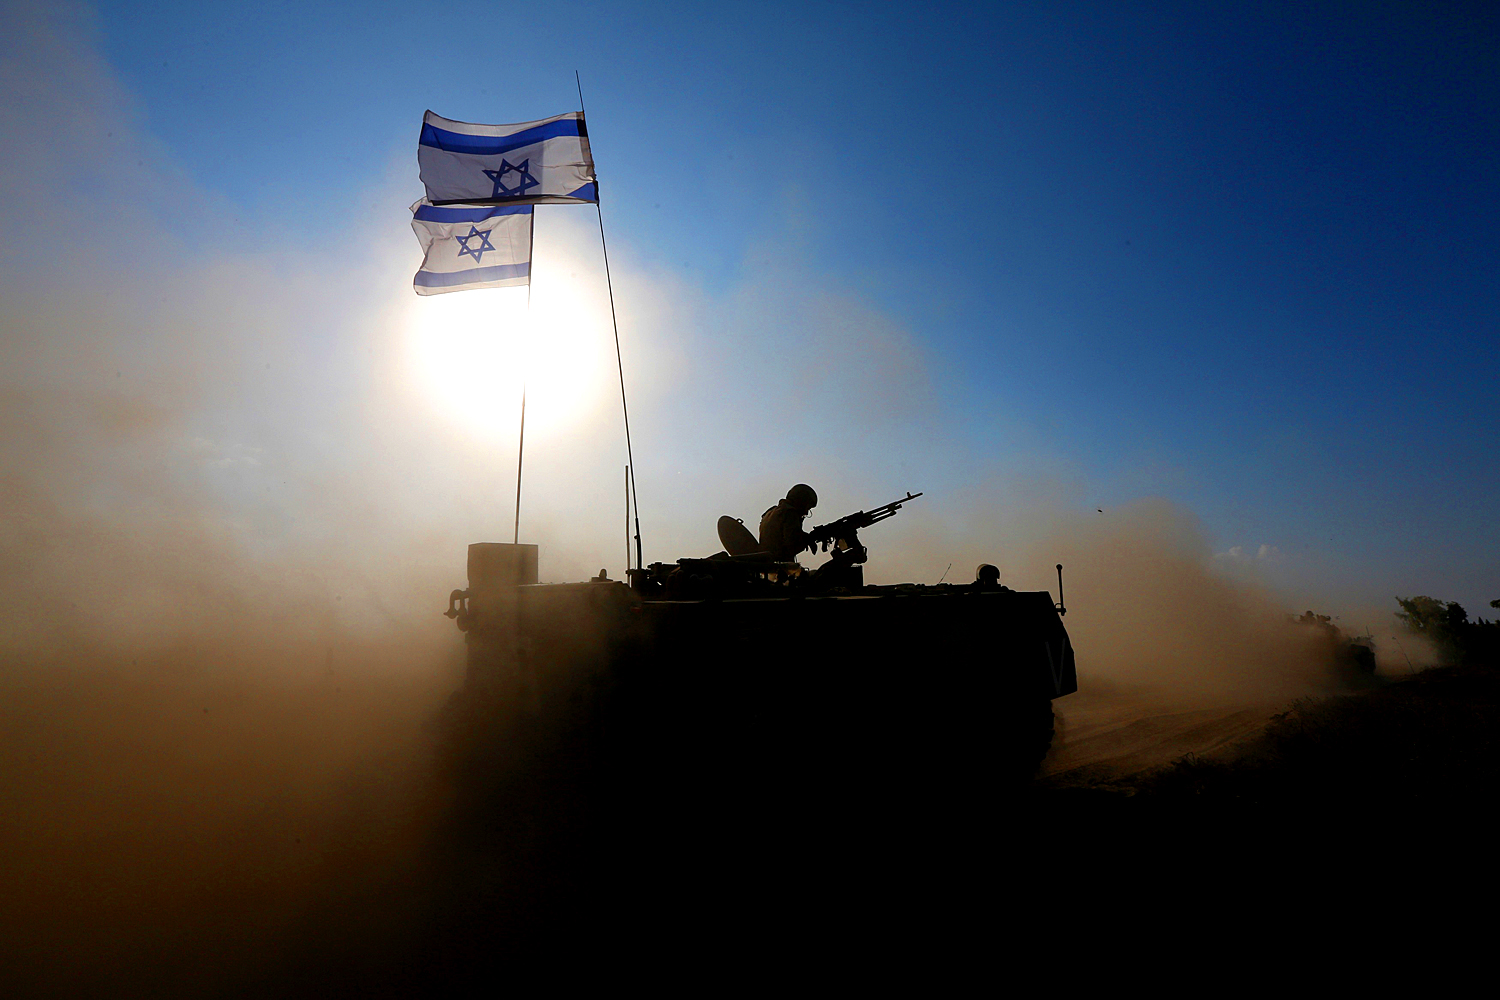 Az izraeli erők egy része már megkezdte a kivonulást. A kérdés az, hogy meddig fog tartani